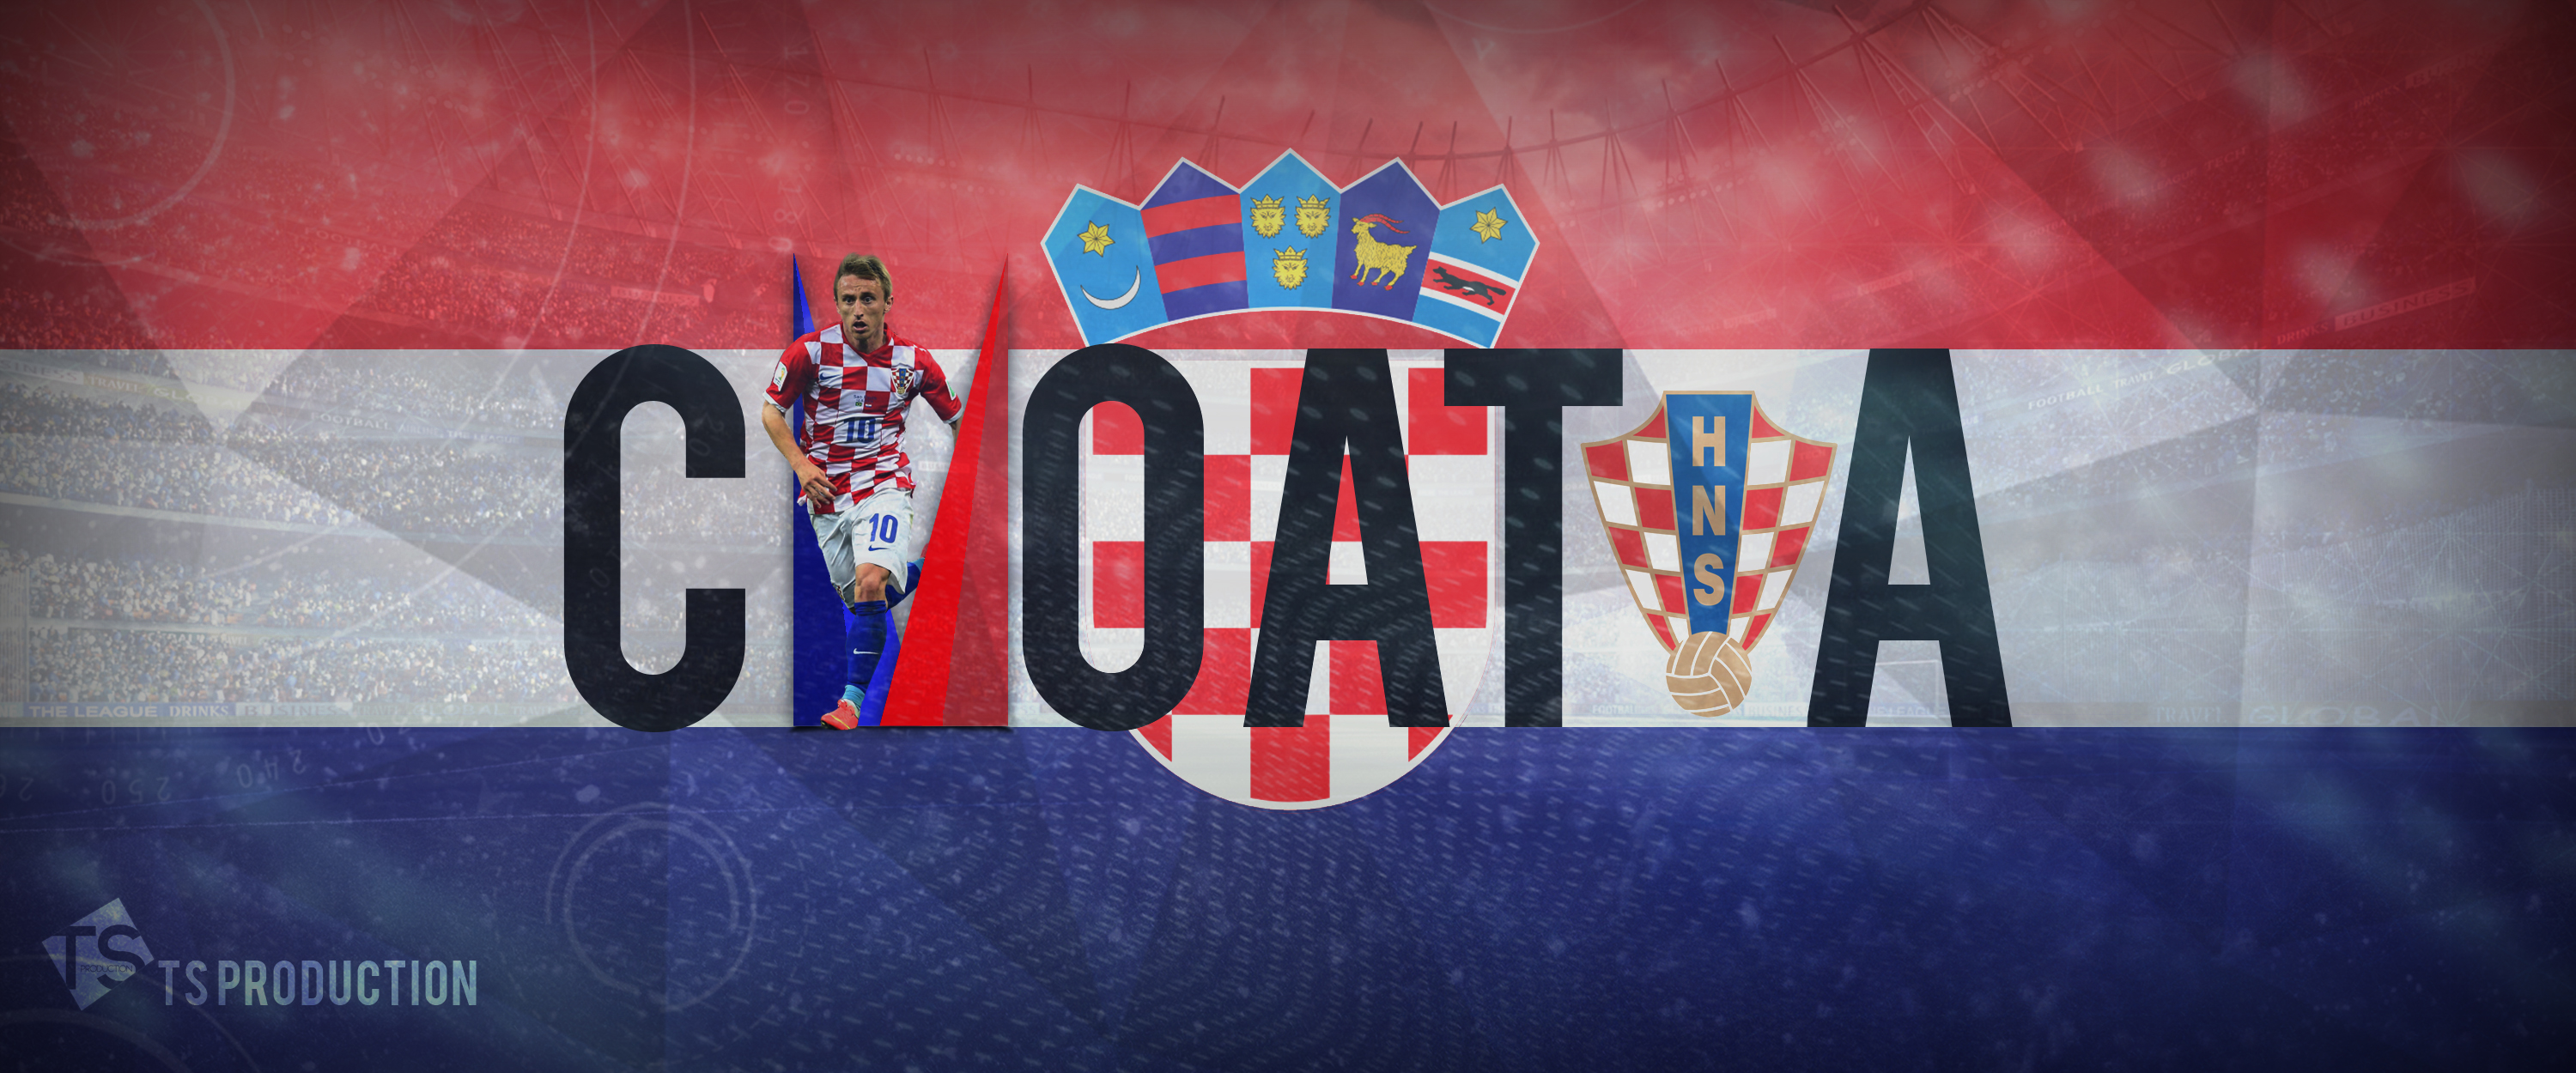 Split Croatia wallpaper by X  Download on ZEDGE  bfd1